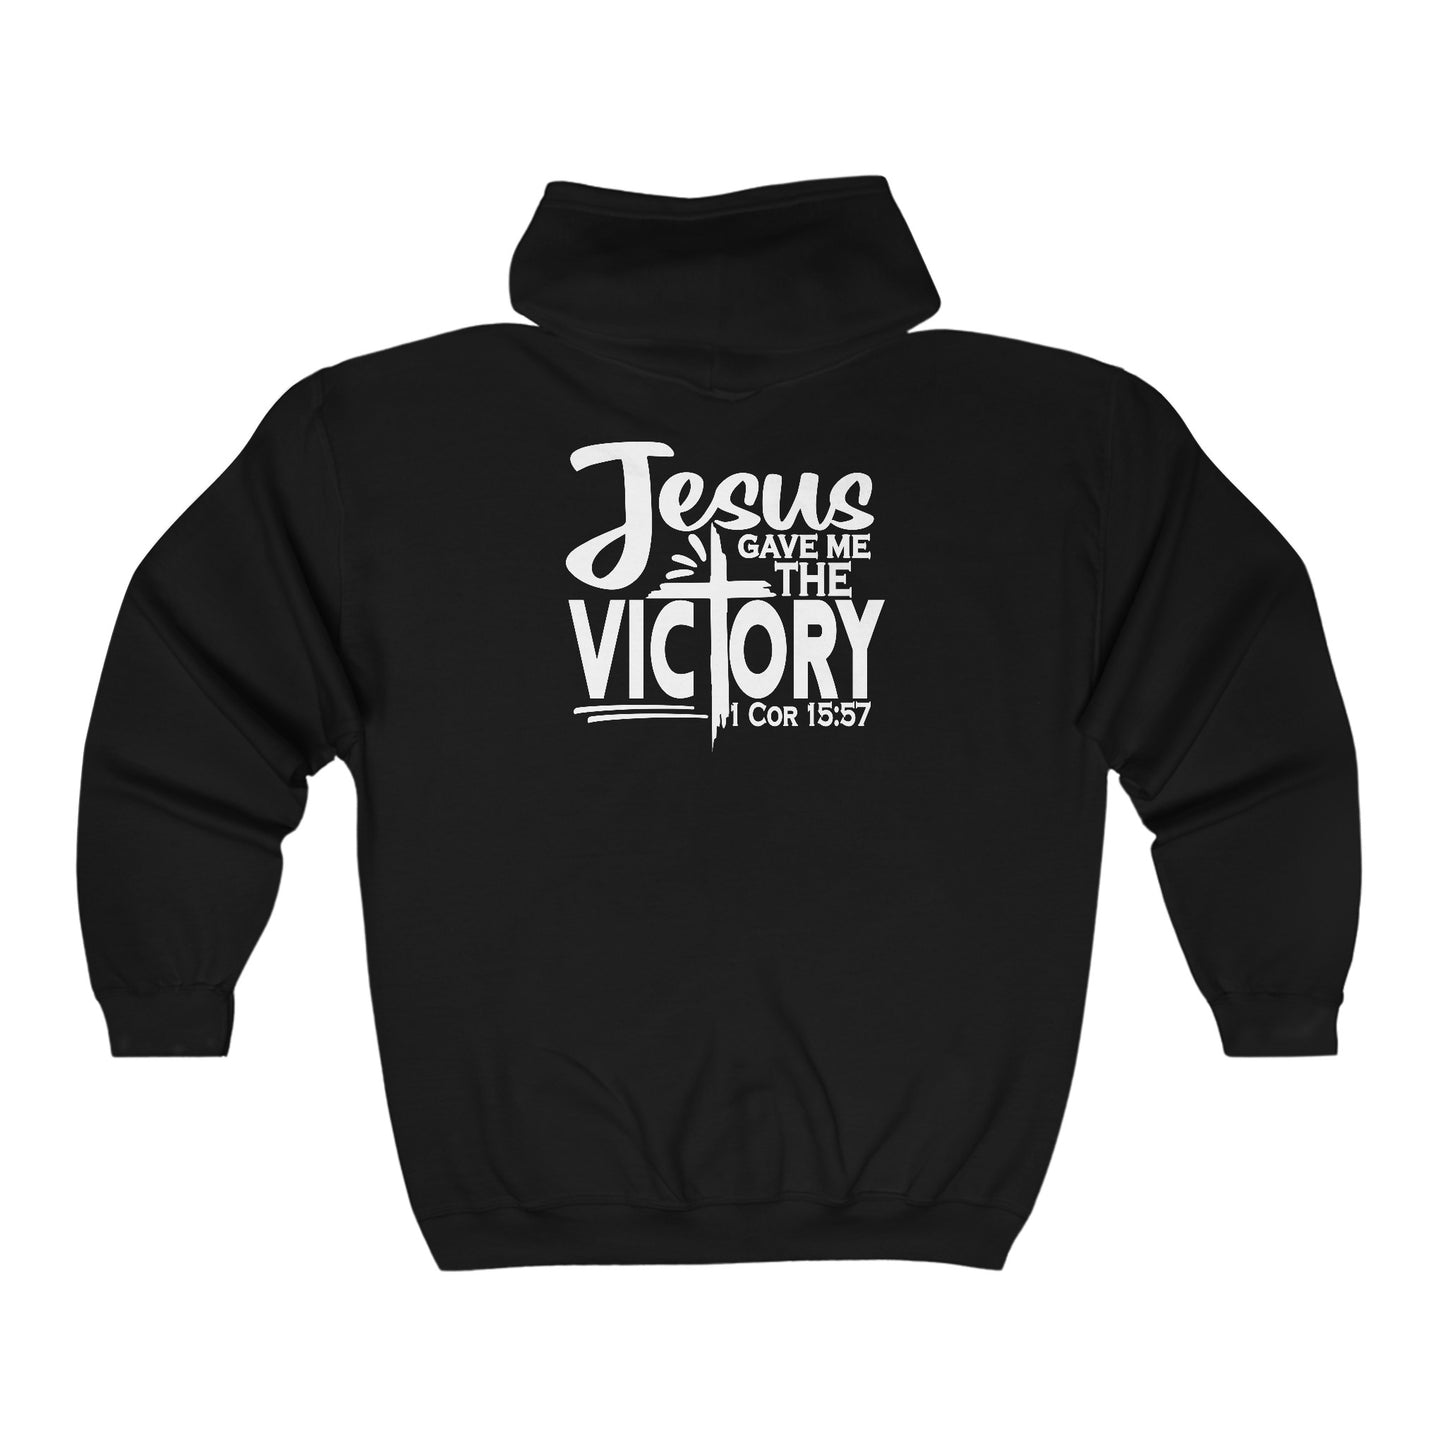 Jesus Gave Me The Victory Unisex Heavy Blend Full Zip Hooded Sweatshirt